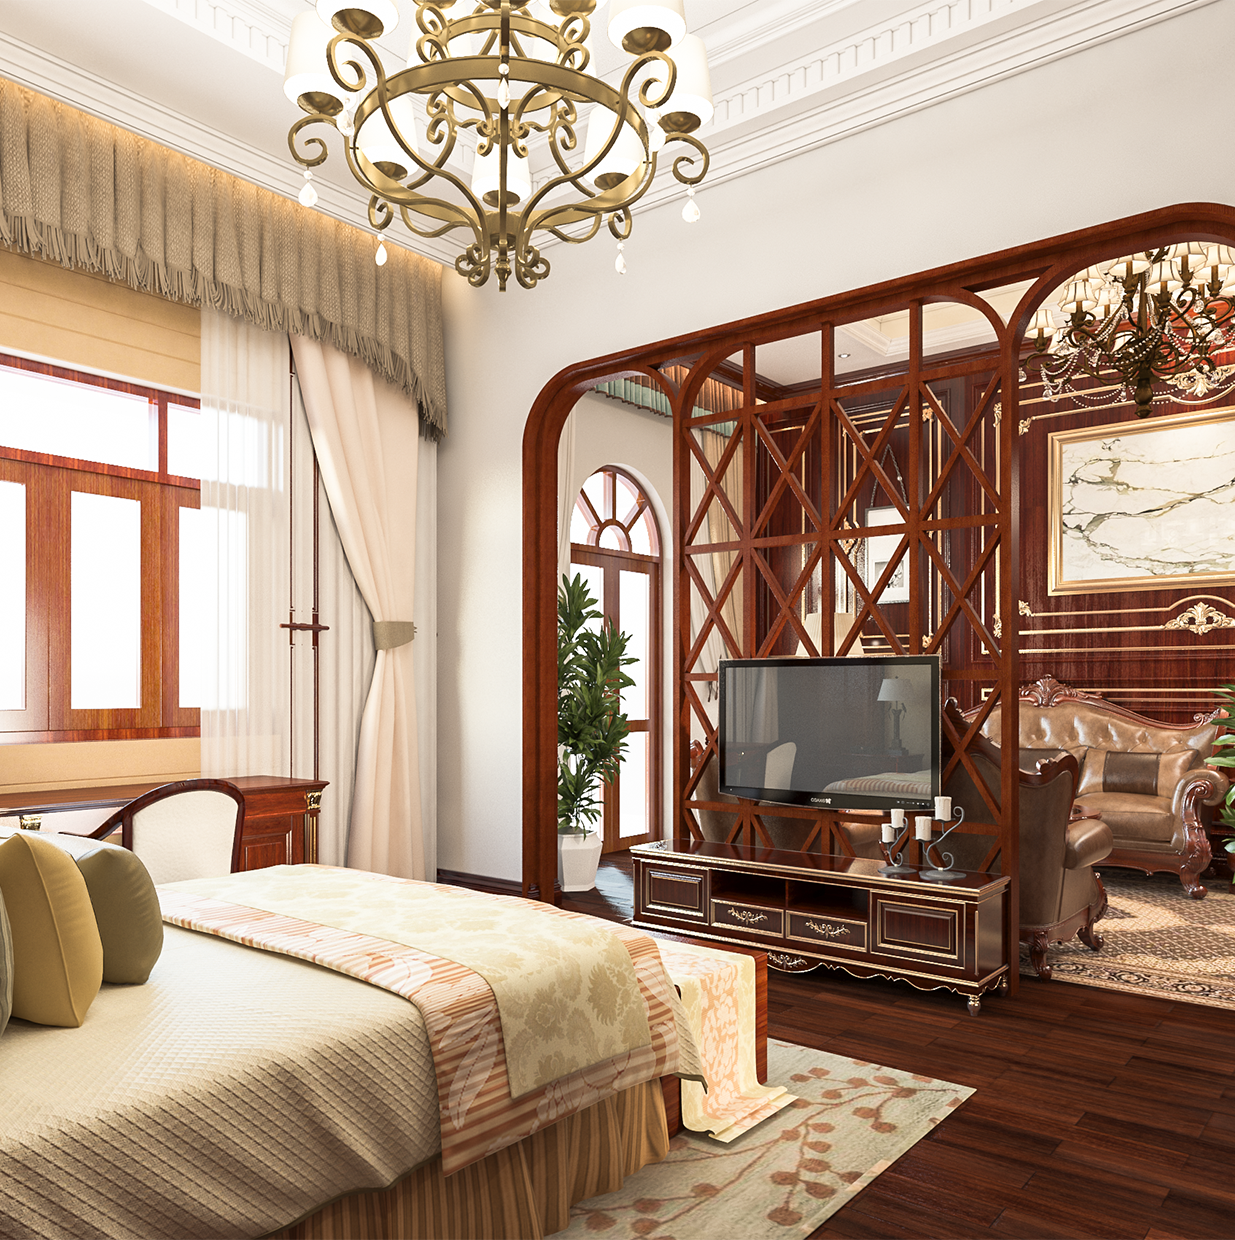 Thiết kế nội thất Khách Sạn tại Cần Thơ Phương Án Nhà Khách T82 1583582577 3